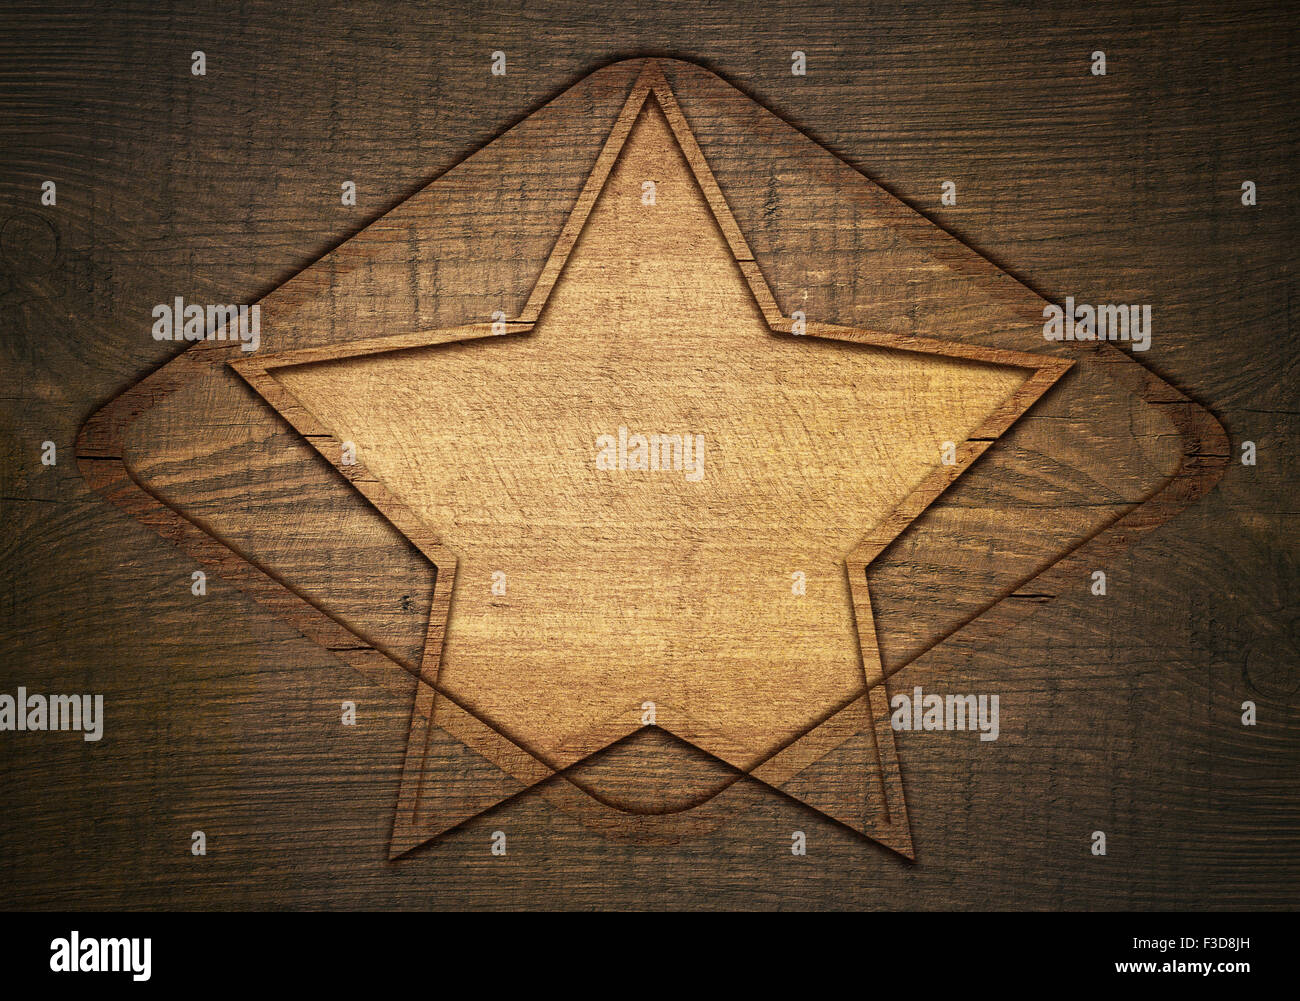 Doble exposición de madera color marrón estrella con rombos y el bastidor sobre tablones wall Foto de stock